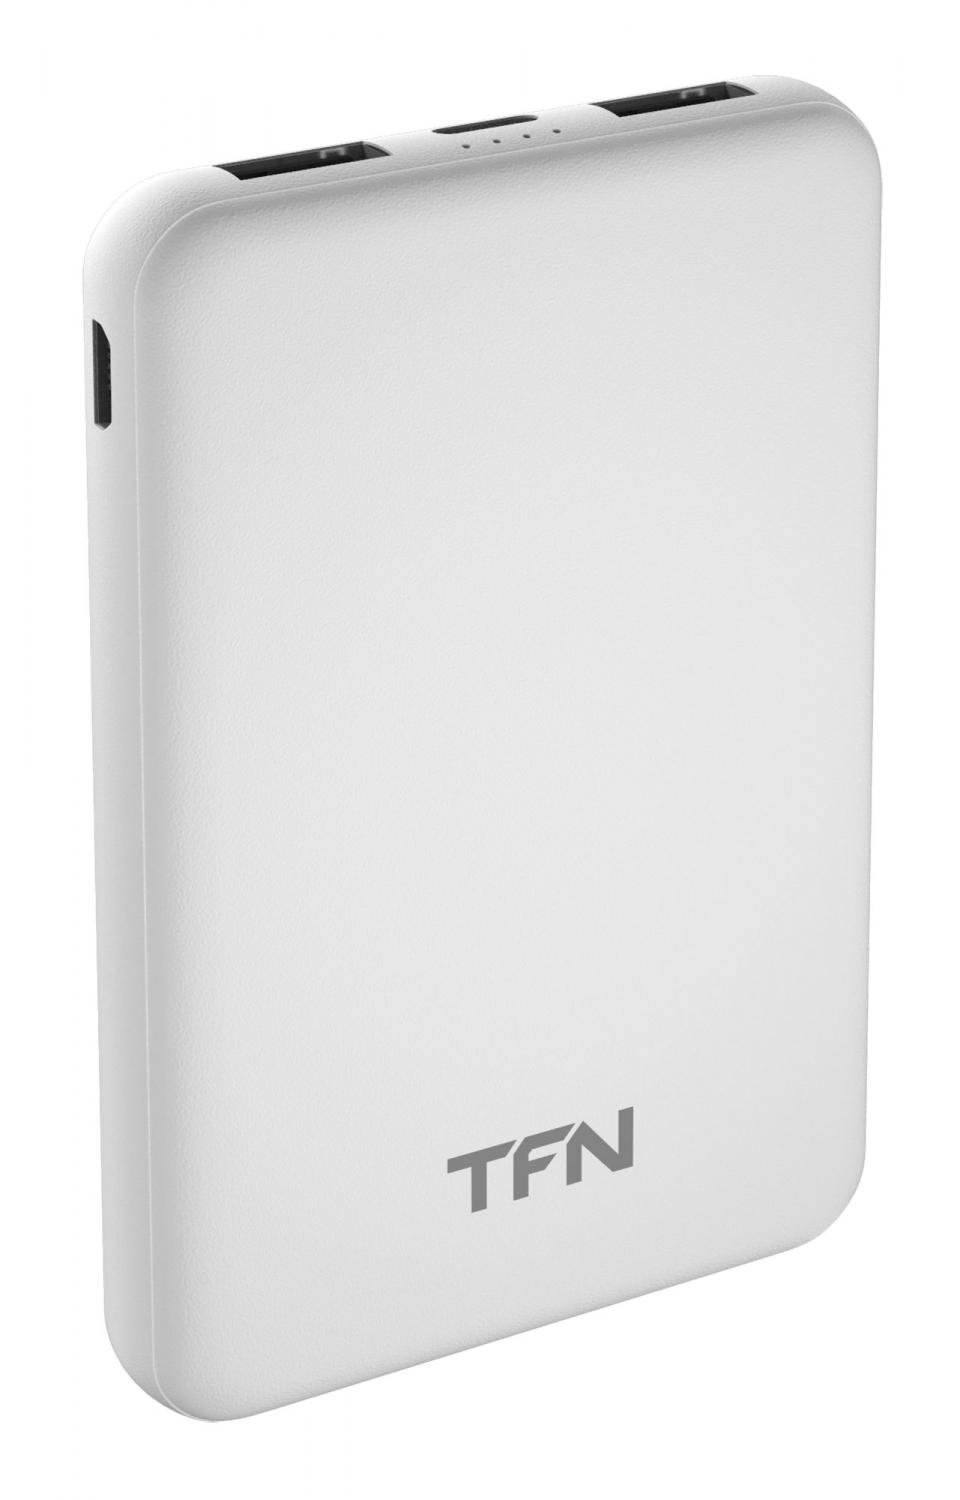 Внешний аккумулятор TFN 5000mAh 2USB / microUSB / Type-C, белый, TFN, SLIM DUO TFN-PB-201-WH